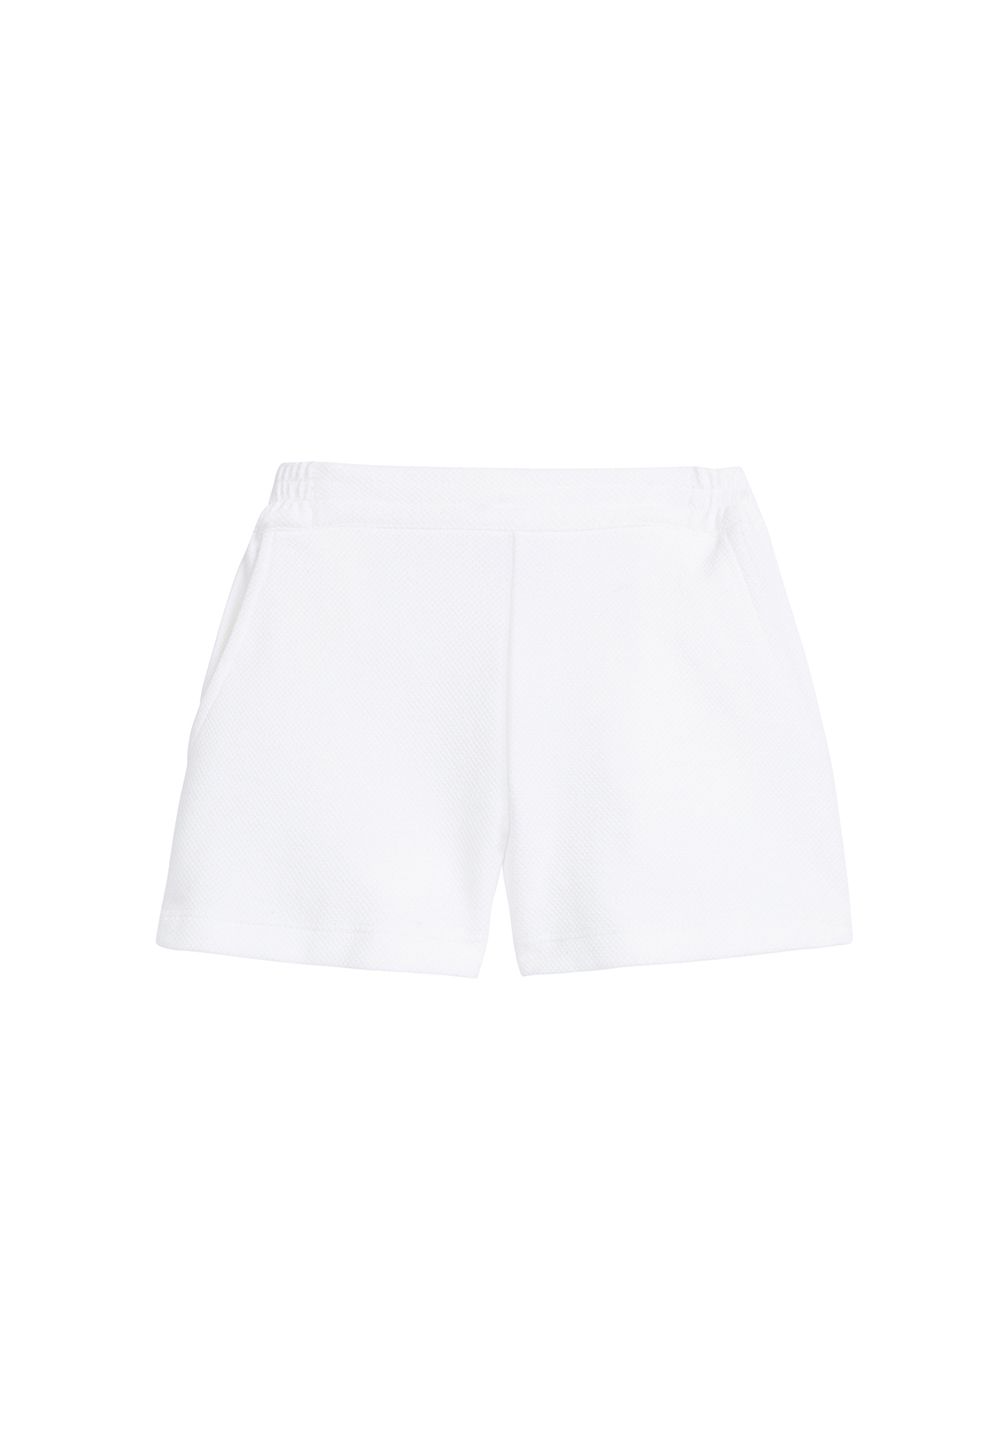 Basic shorts- white sz8